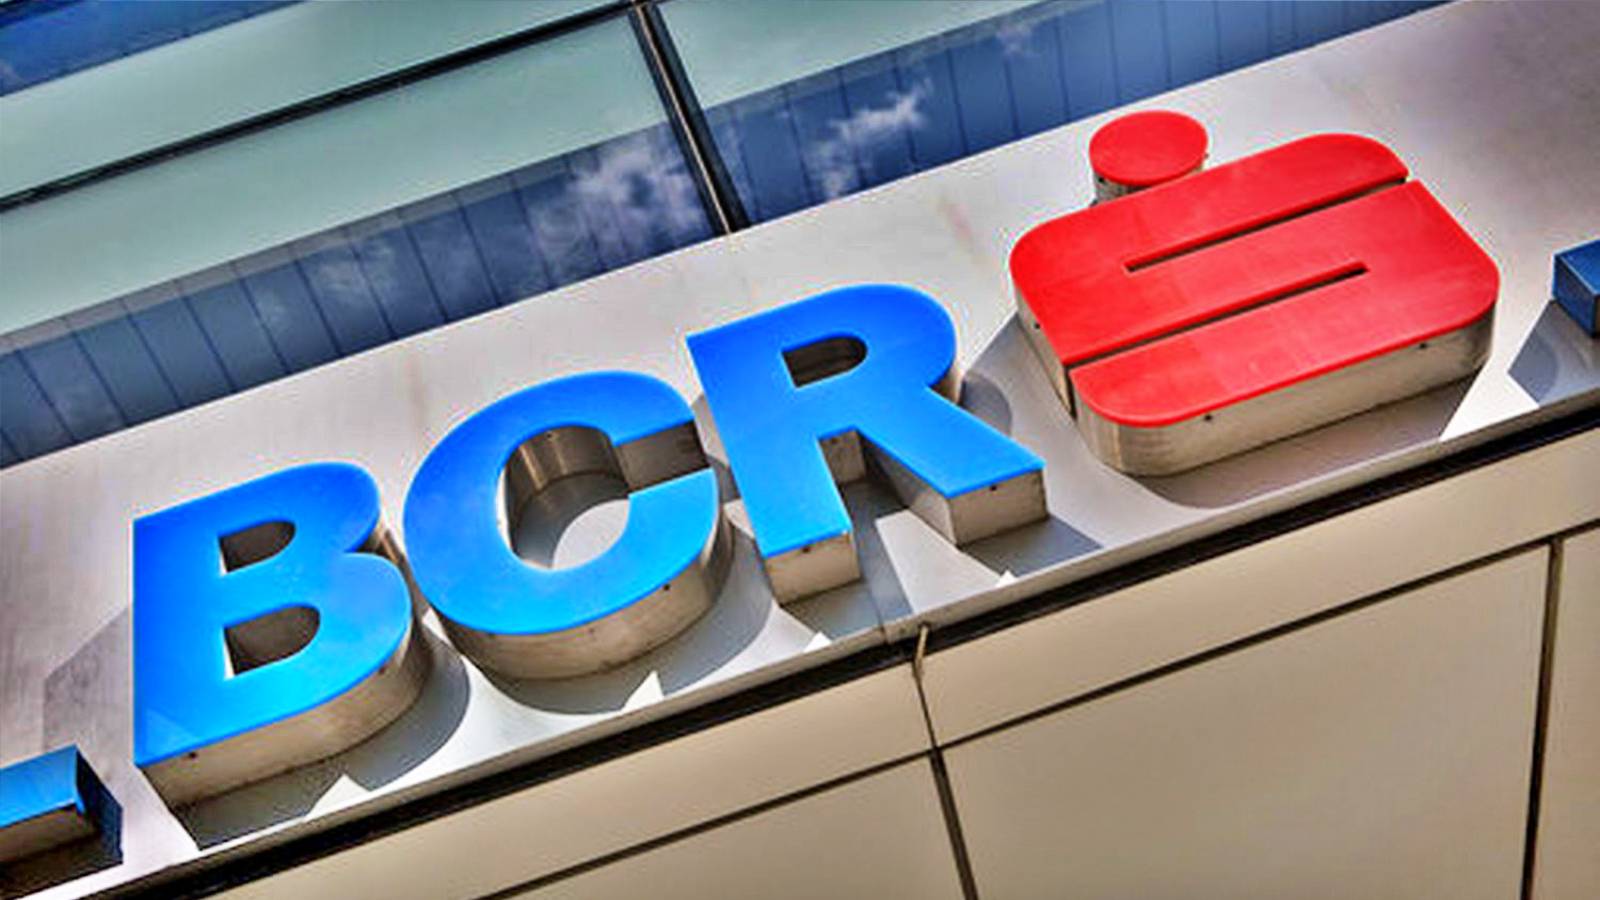 BCR Romania Decizia ULTIMA ORA Anuntata Oficial Aplicare Astazi